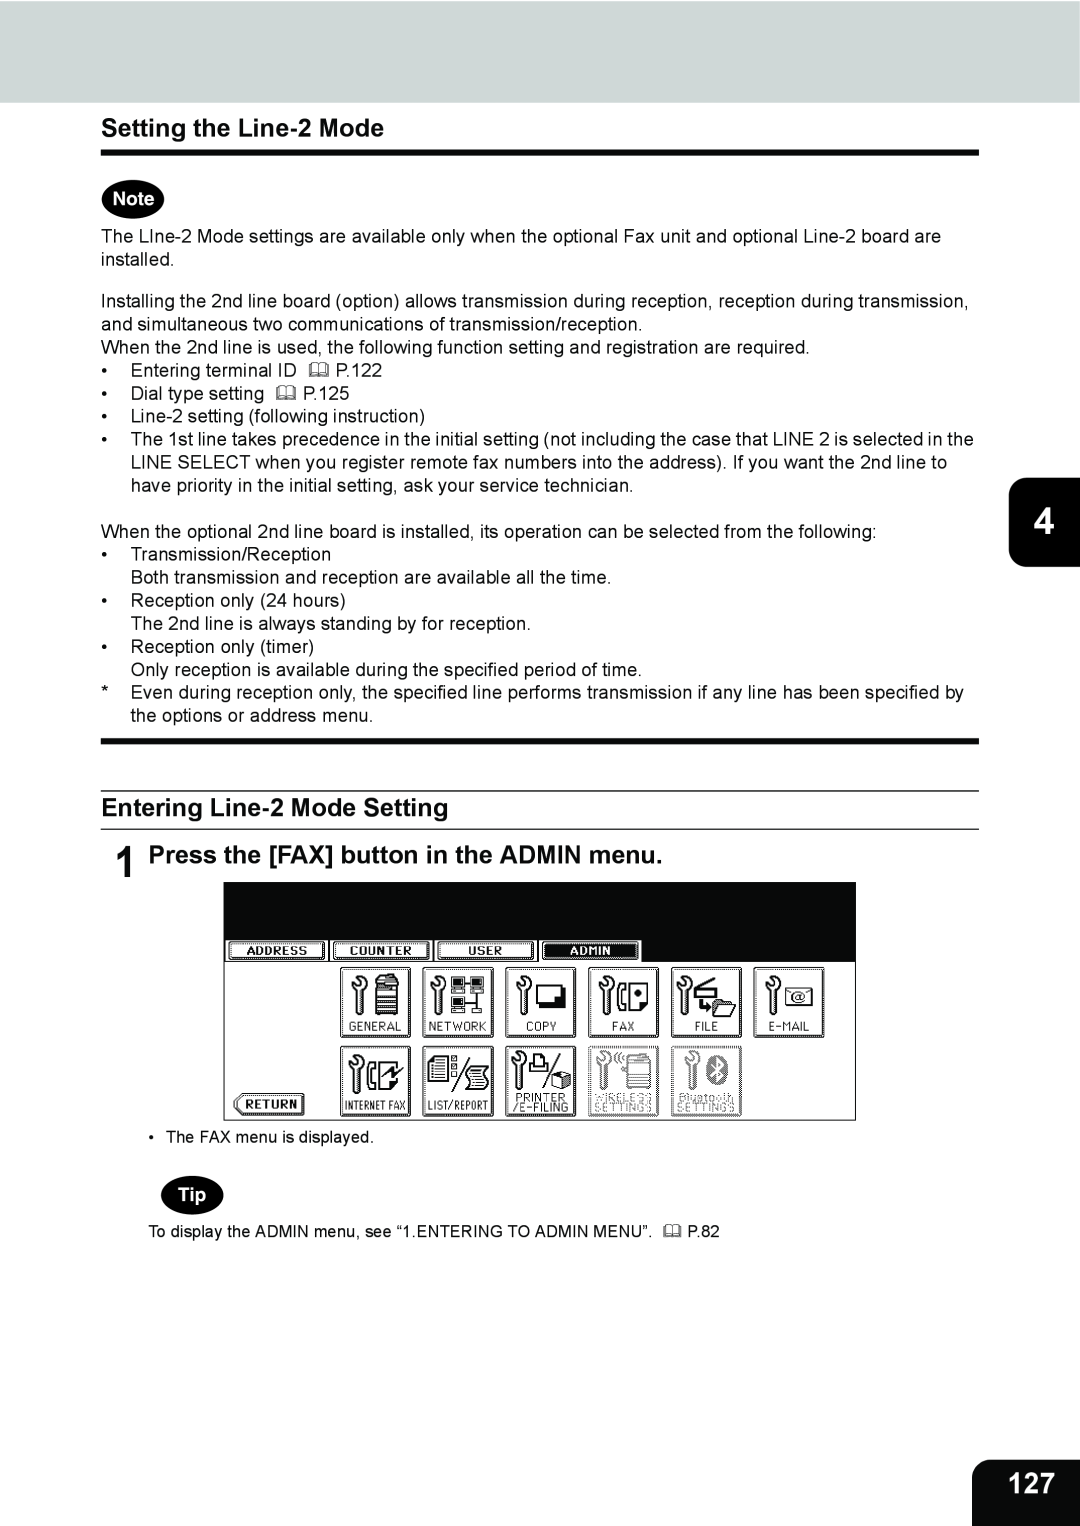 Toshiba 232, 282, 202L manual Setting the Line-2 Mode, Entering Line-2 Mode Setting 1 Press the FAX button in the ADMIN menu 